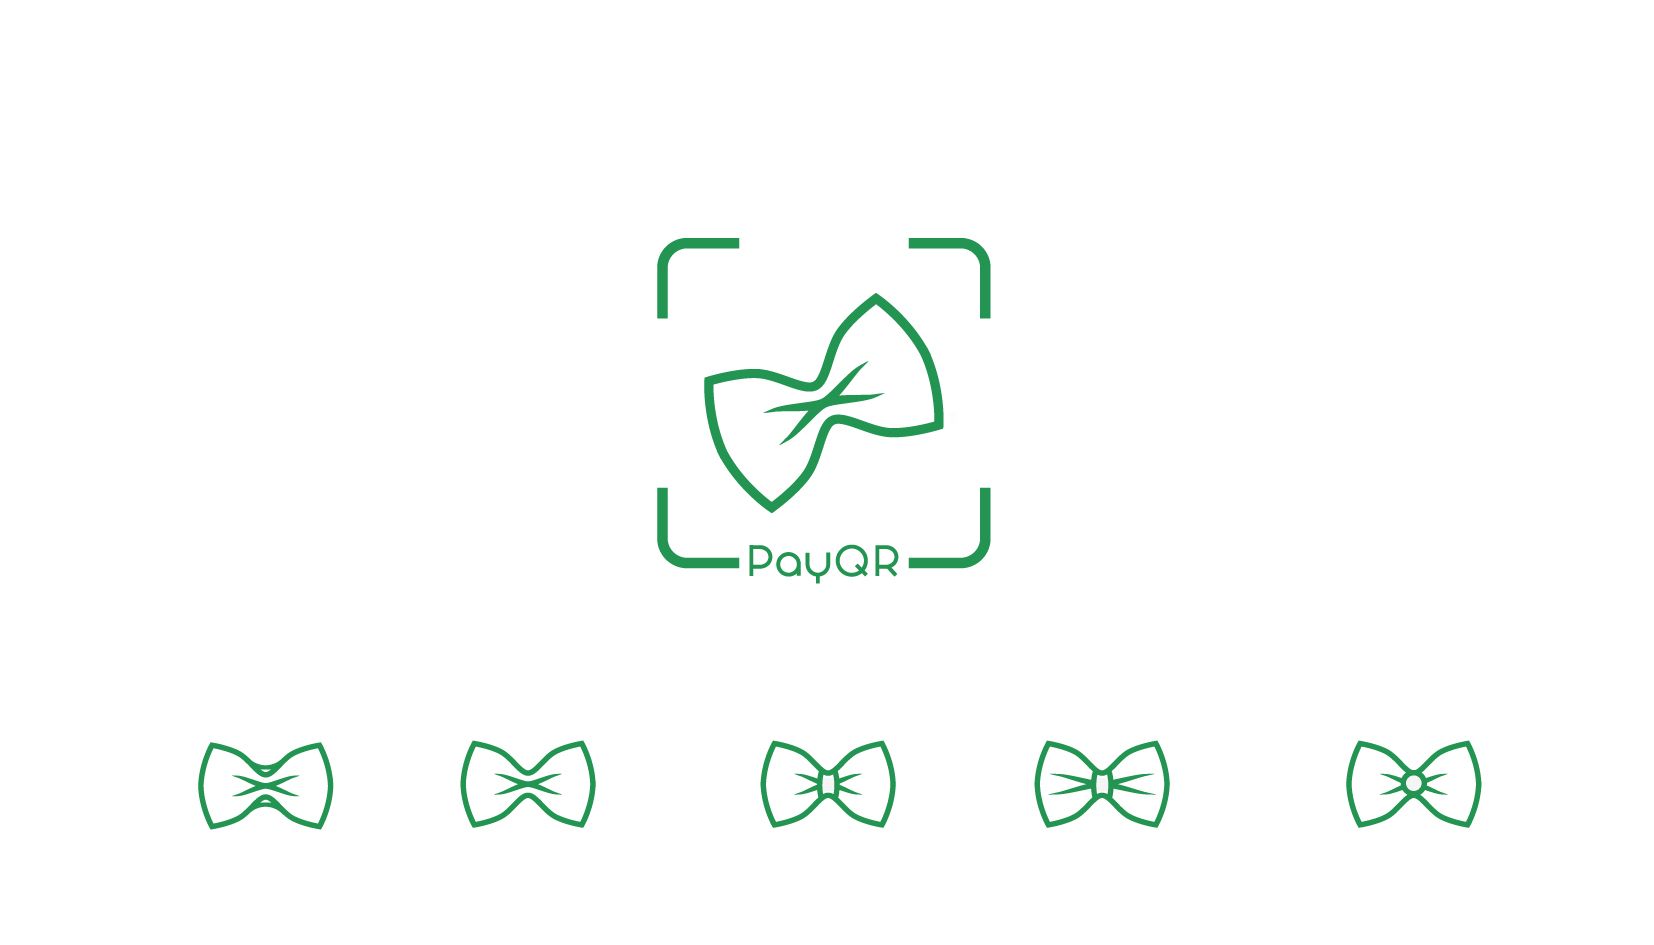 Рестайлинг лого PayQR (заменить сумку на бабочку) - дизайнер andblin61